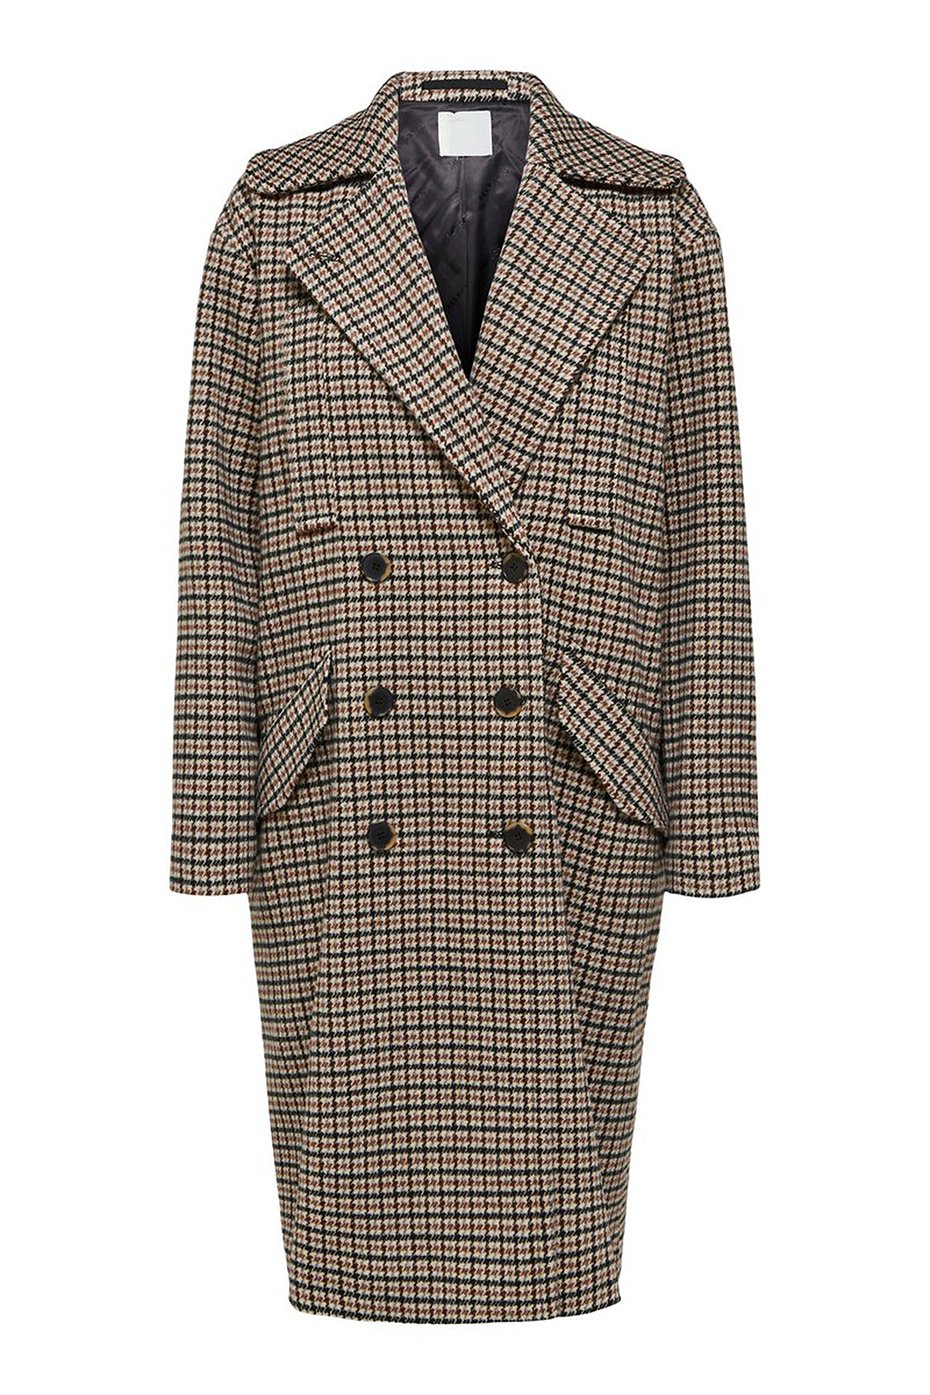 Selected Femme Brown Houndstooth Essie Wool Coat